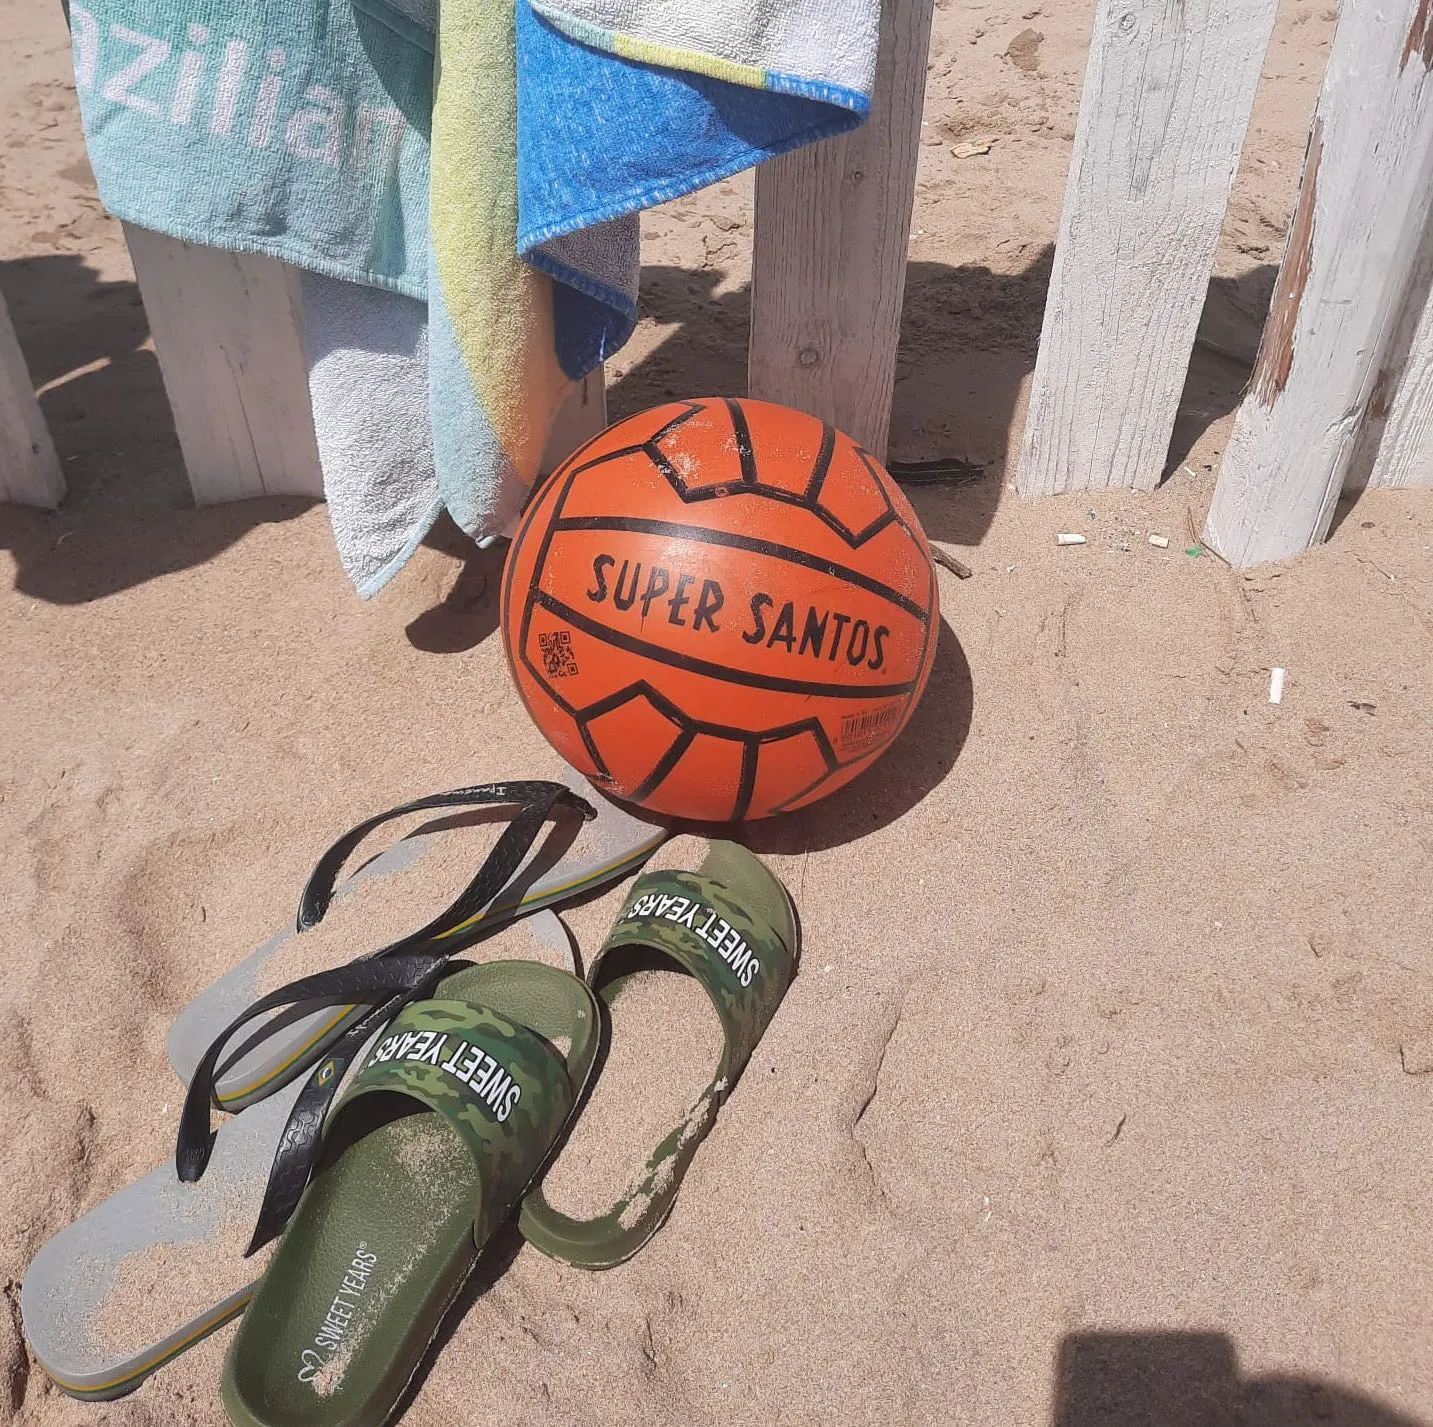 Ein Super-Santos-Ball an einem italienischen Strand im Sommer, umgeben von aufgehängten Strandtüchern und Strandsandalen